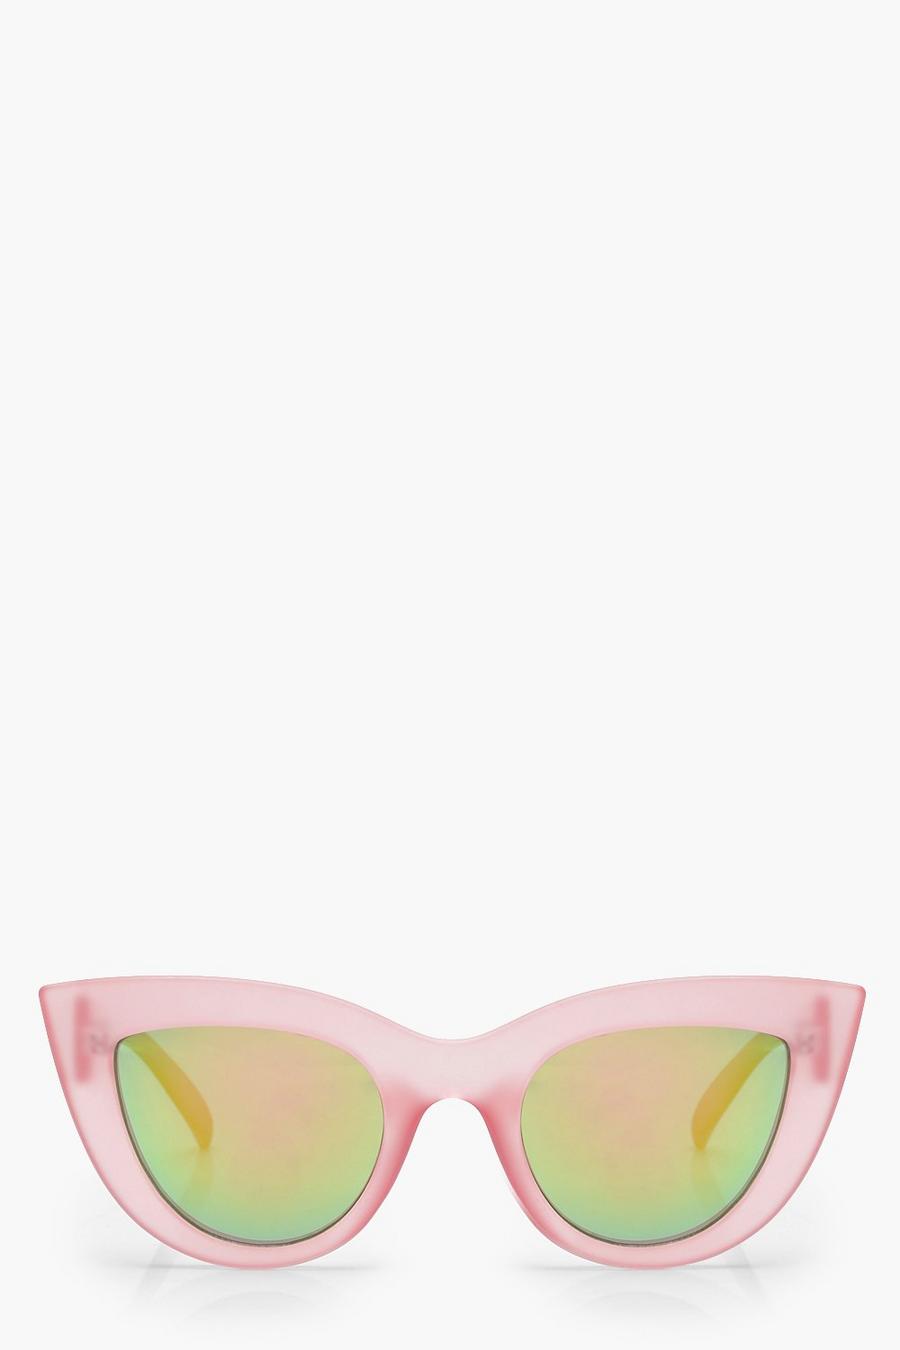 Gafas de sol de ojos de gato retro con lentes rosadas image number 1